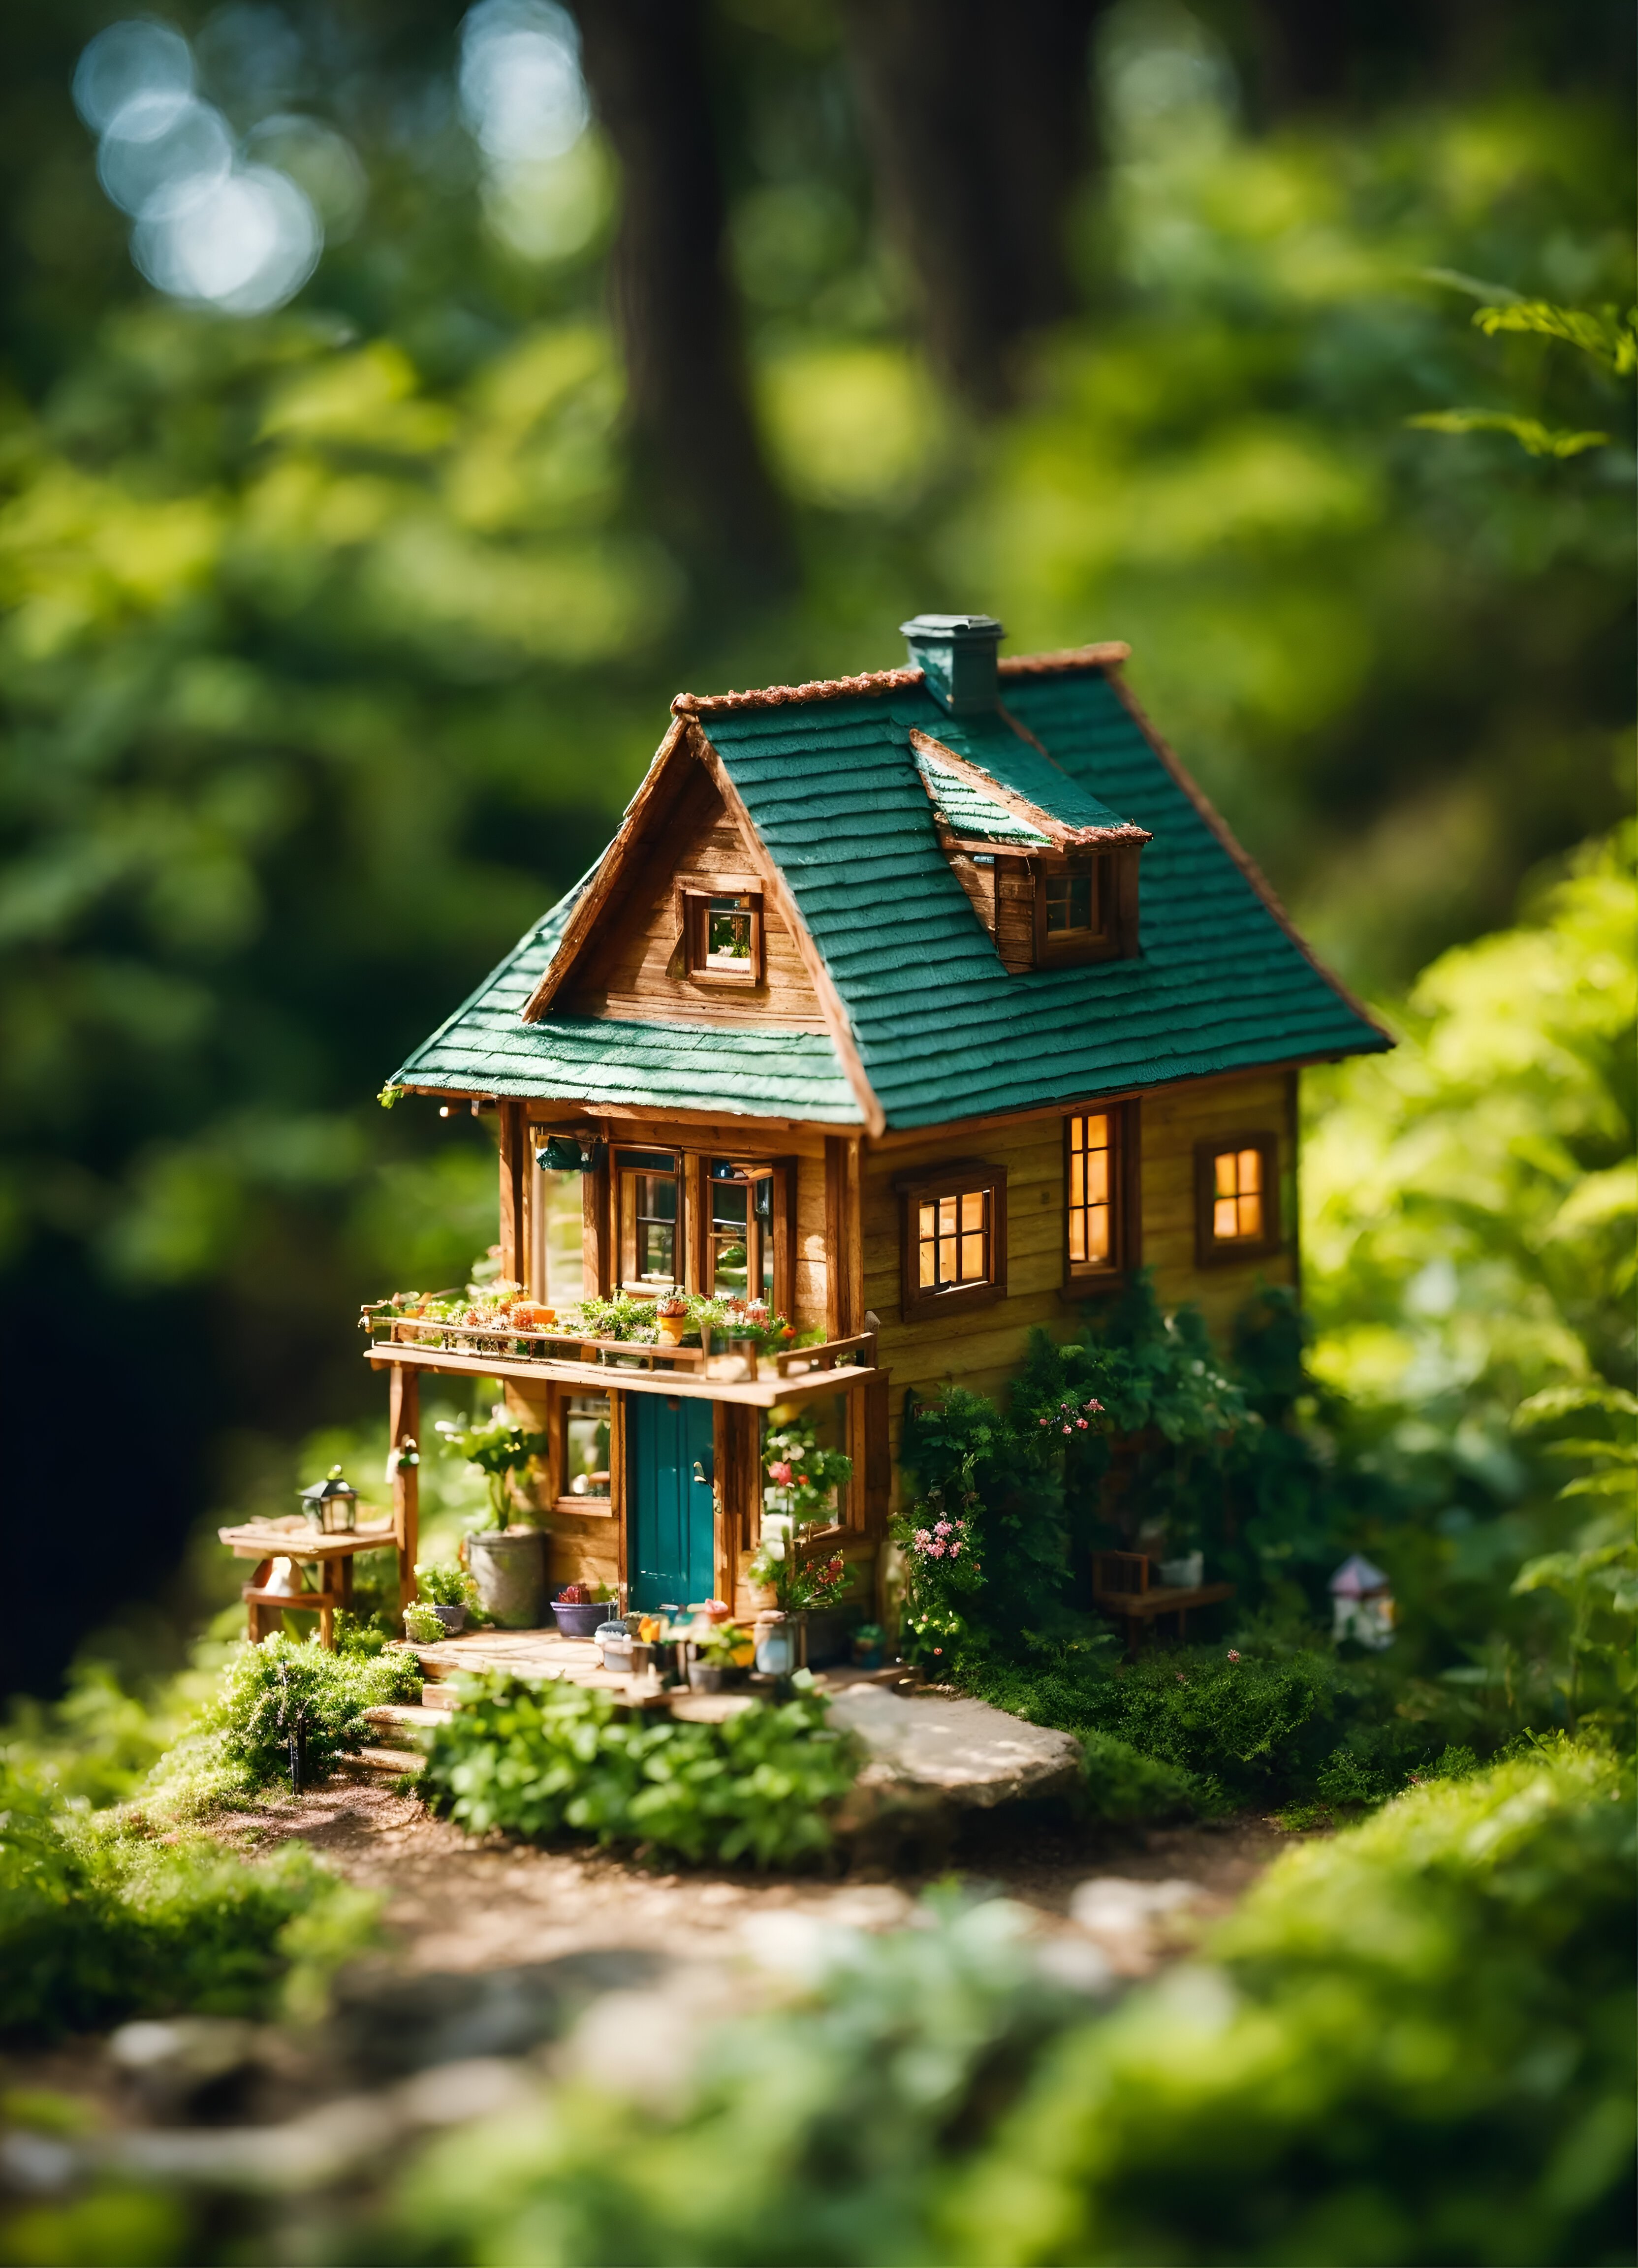 Tiny Toy House